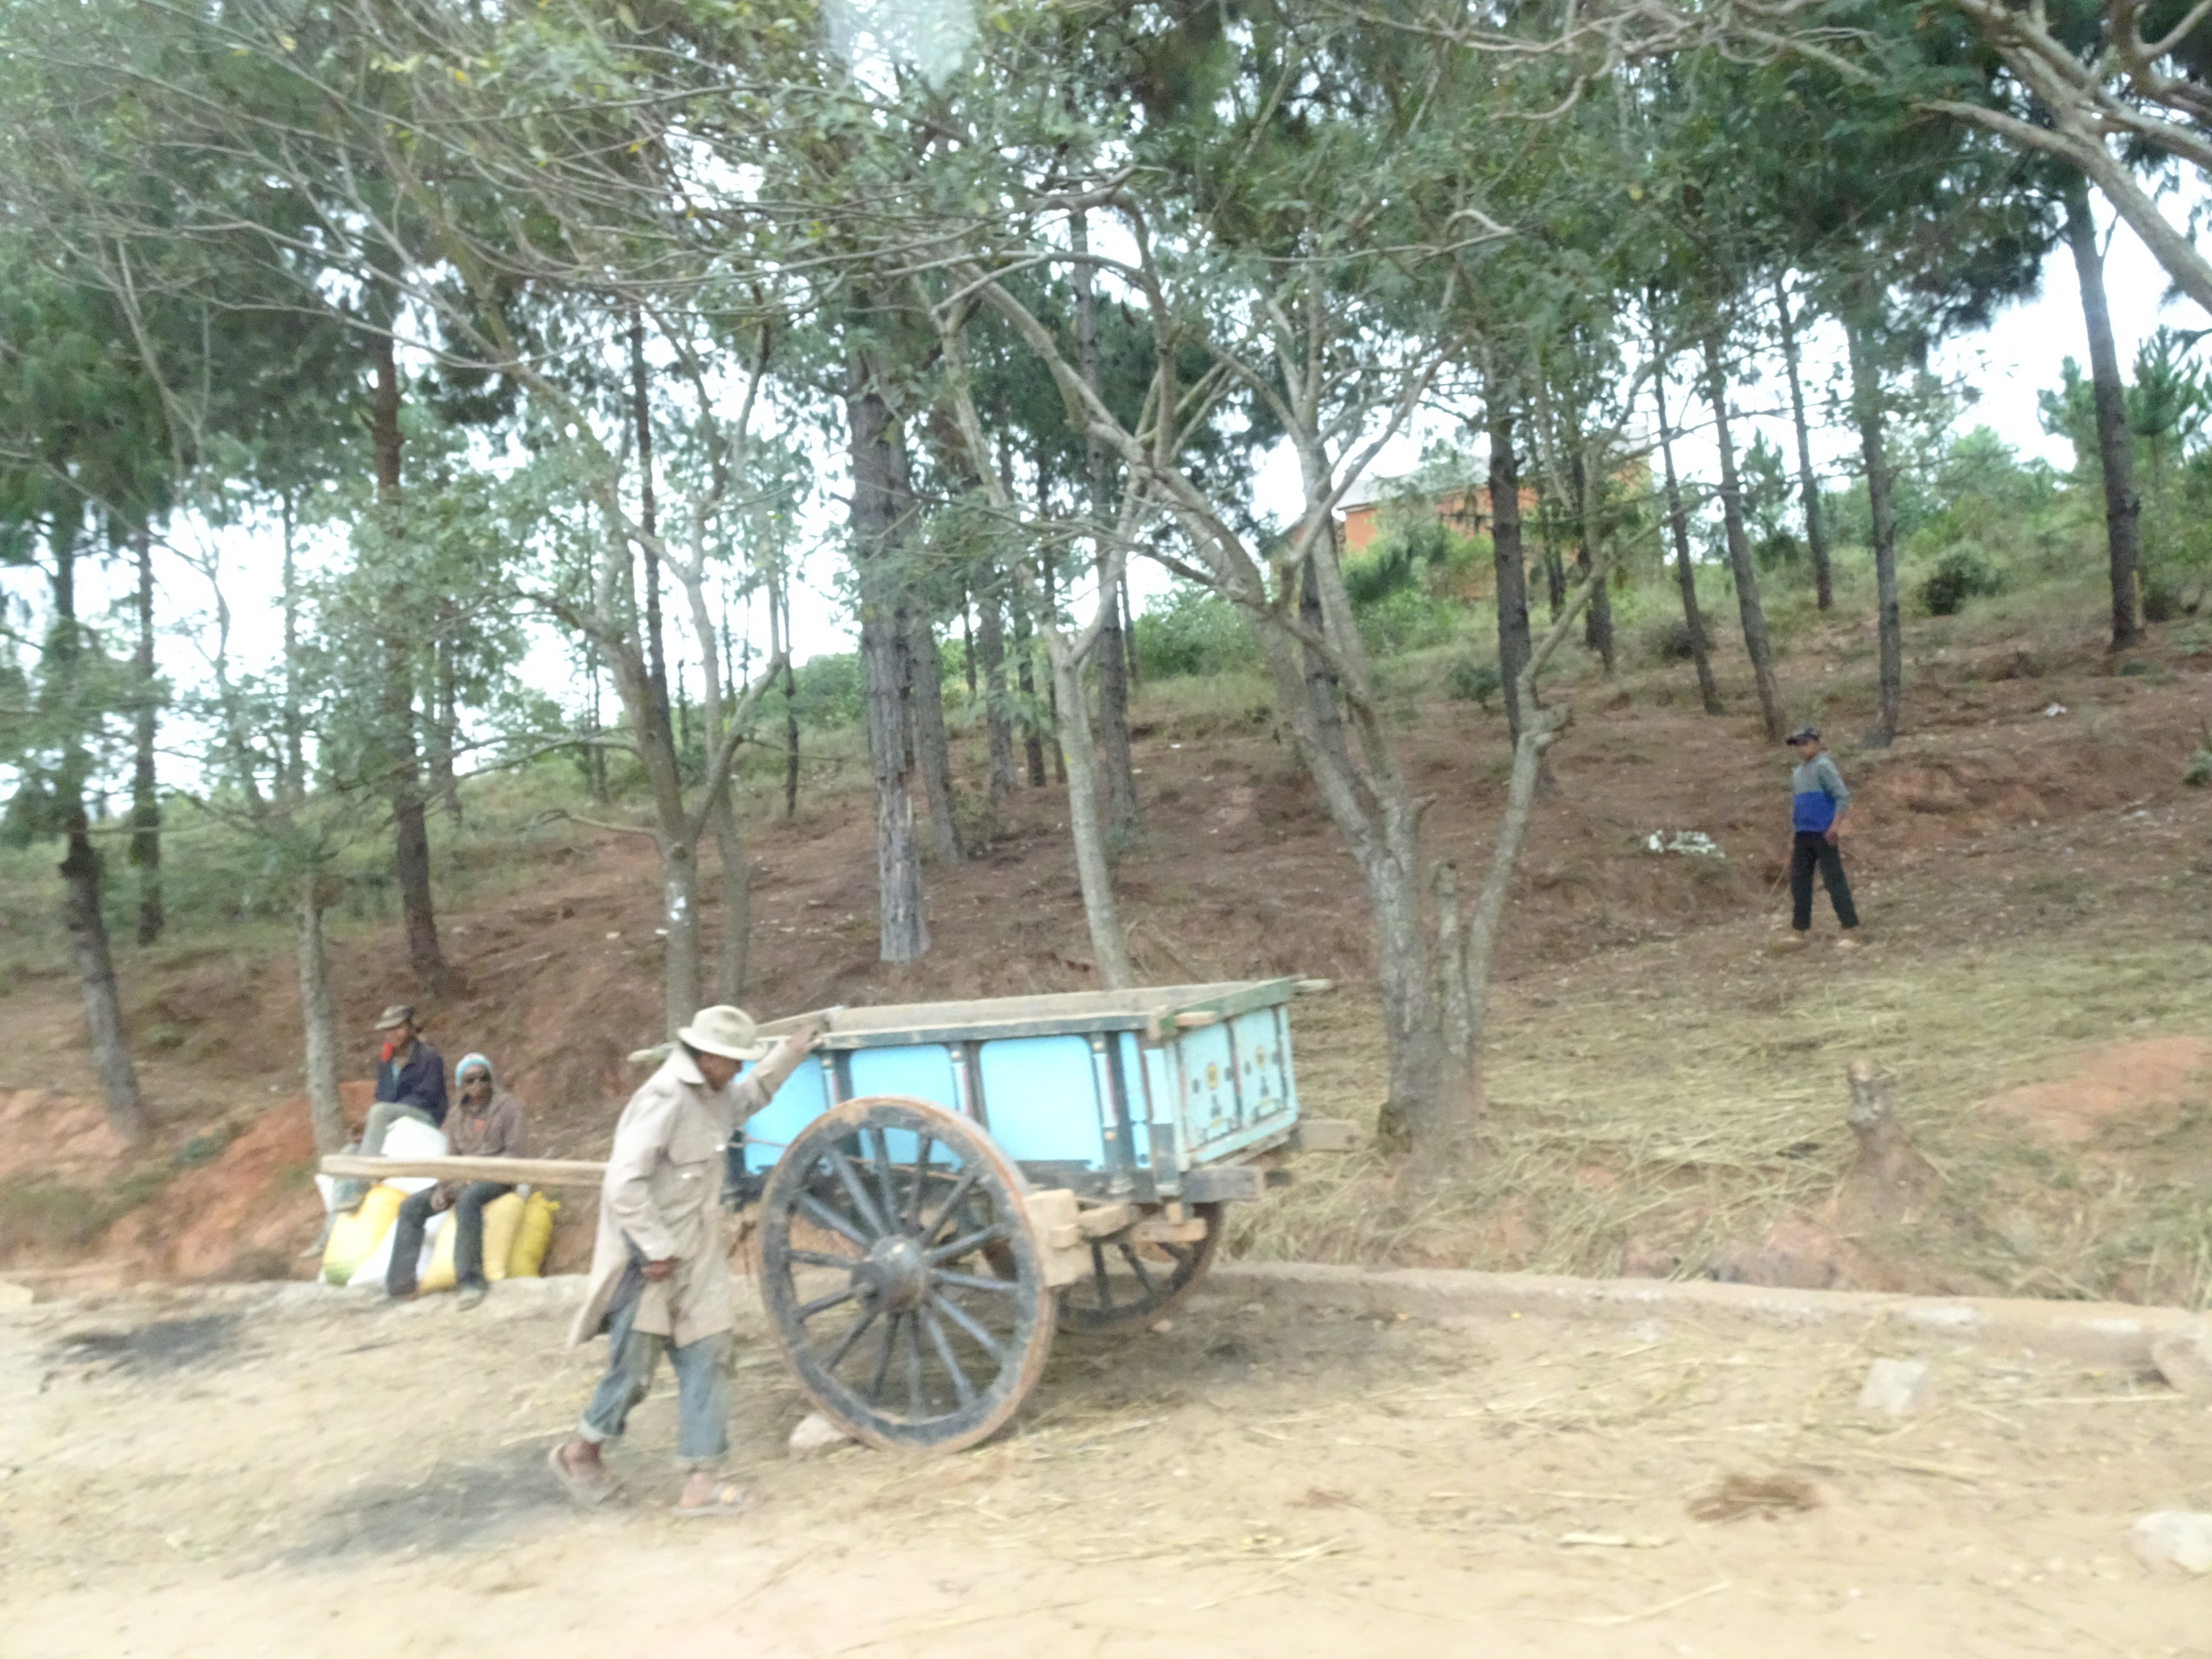 Normalmente gli abitanti del Madagascar non possono permettersi alcun mezzo di trasporto, pertanto i prodotti agricoli o le merci vengono trainate a mano (Madagascar, 2018)